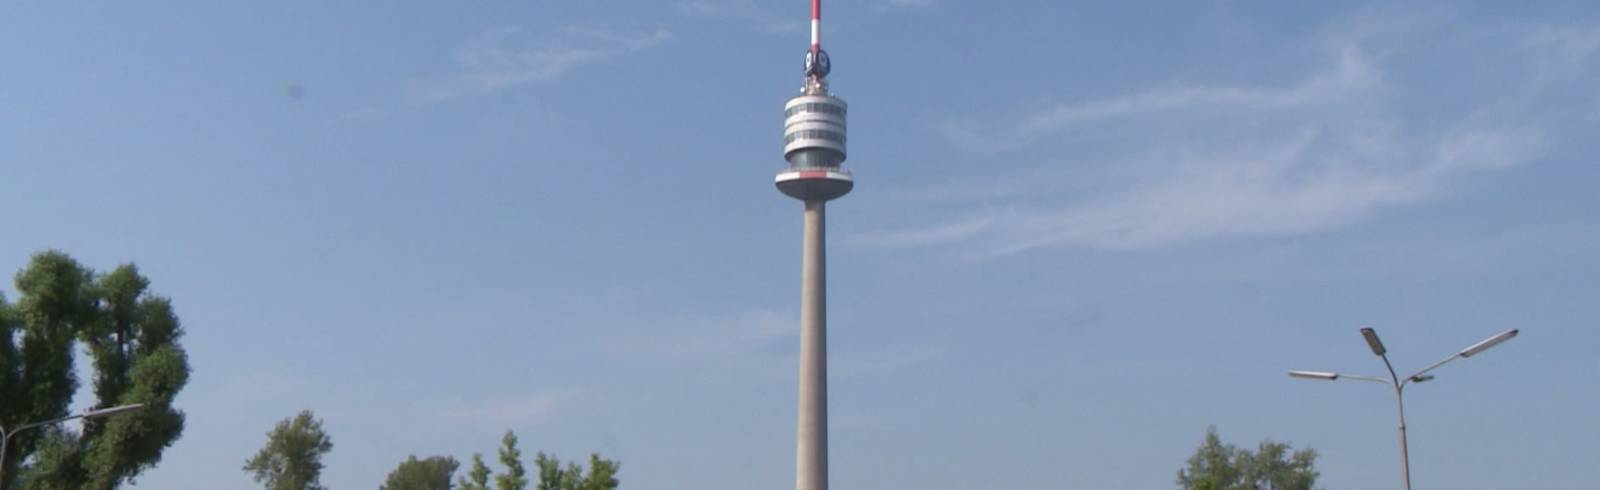 Donauturm-Umbau abgeschlossen